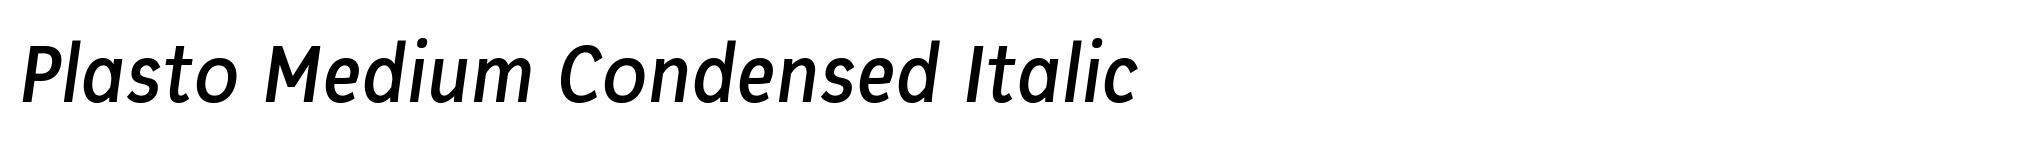 Plasto Medium Condensed Italic image